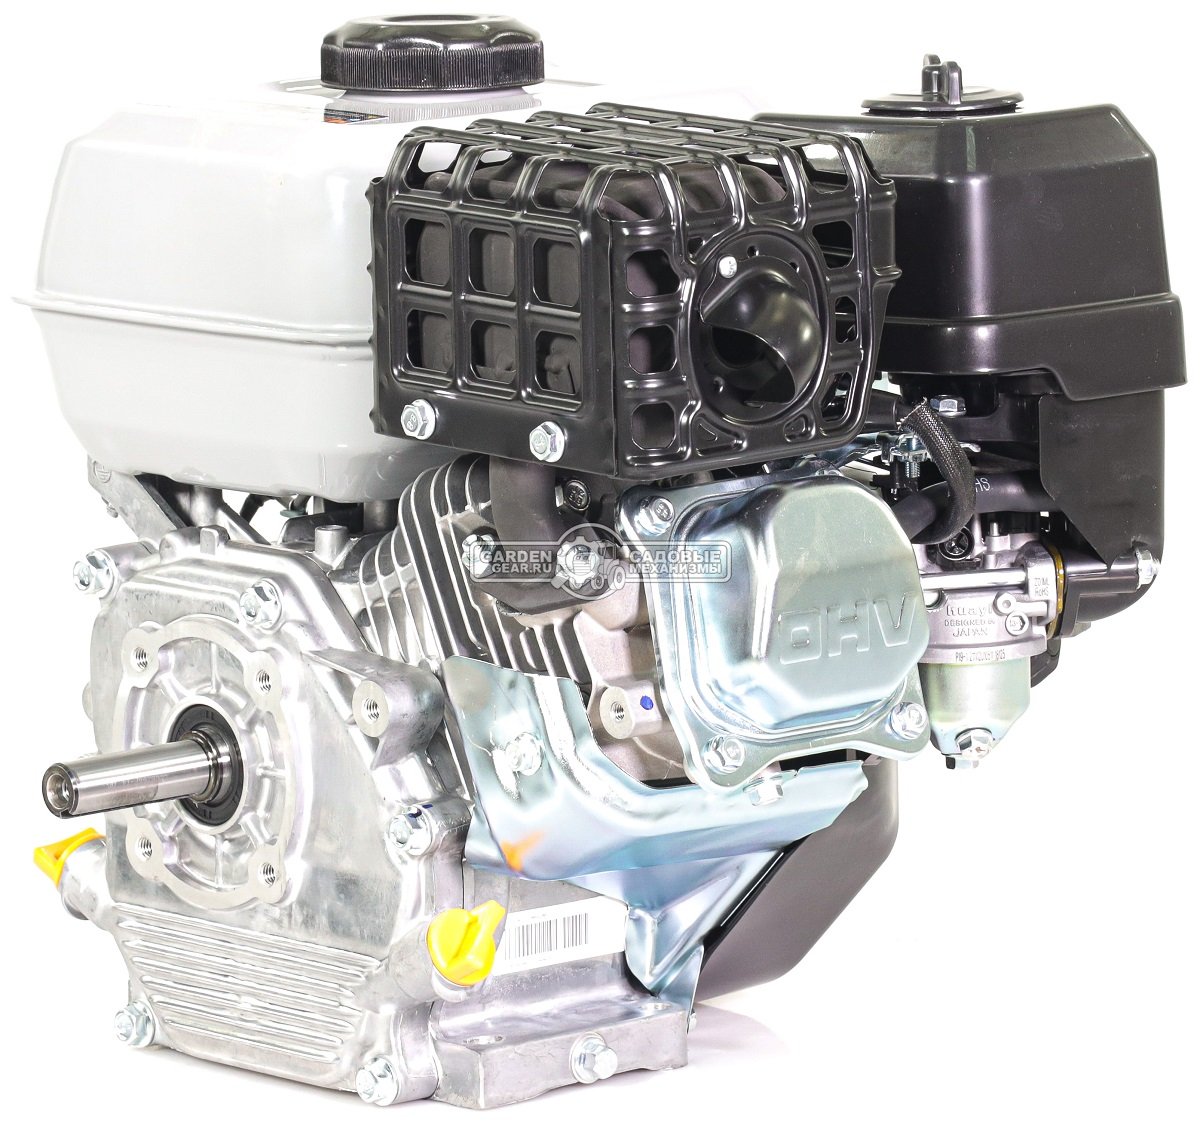 Бензиновый двигатель Zongshen GB200Q (PRC, 6,5 л.с., 196 см3. D=19,05 мм L= 62 мм, вал - цилиндр, 15,5 кг.)